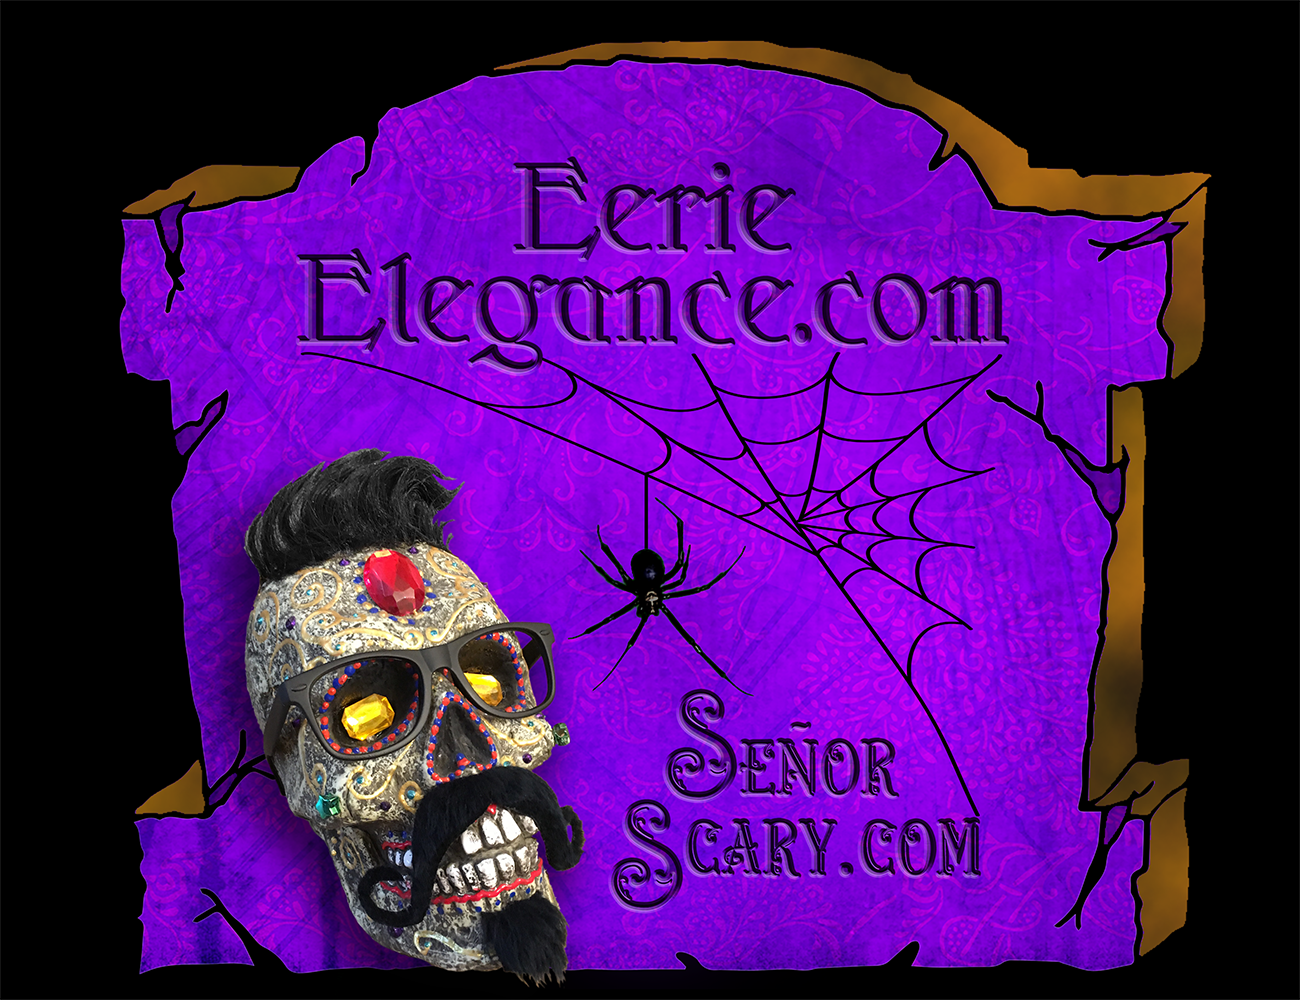 Eerie Elegance & Señor Scary